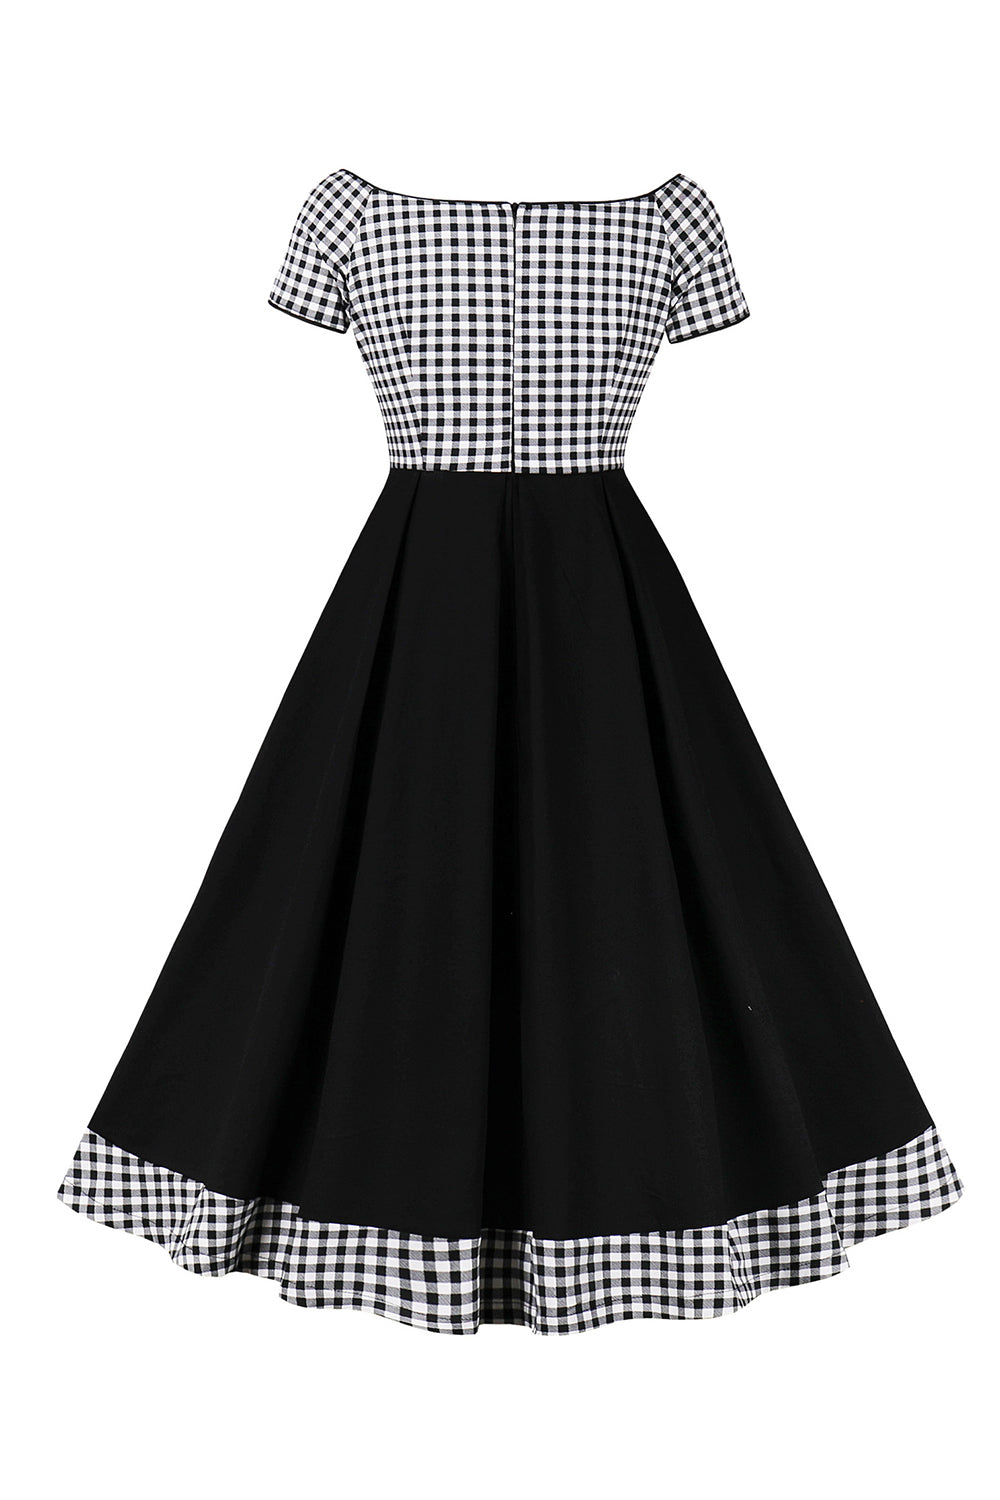 Black Plaid Off the Shoulder Vintage Dress With Short Sleeves